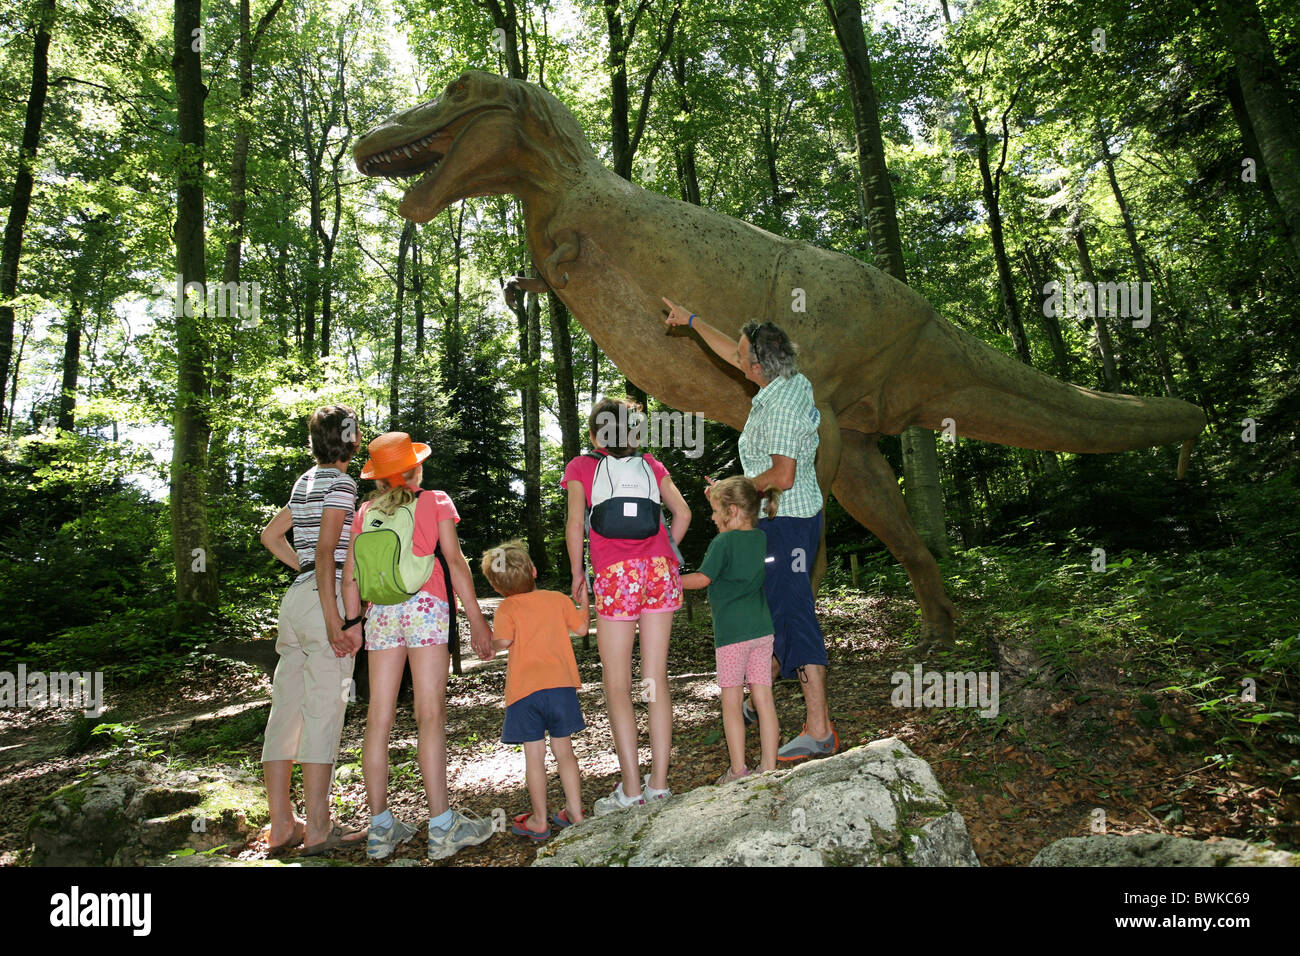 Les enfants du groupe familial parc préhistoriques dinosaures Reclere canton Jura Suisse Europe expérience excursion Banque D'Images